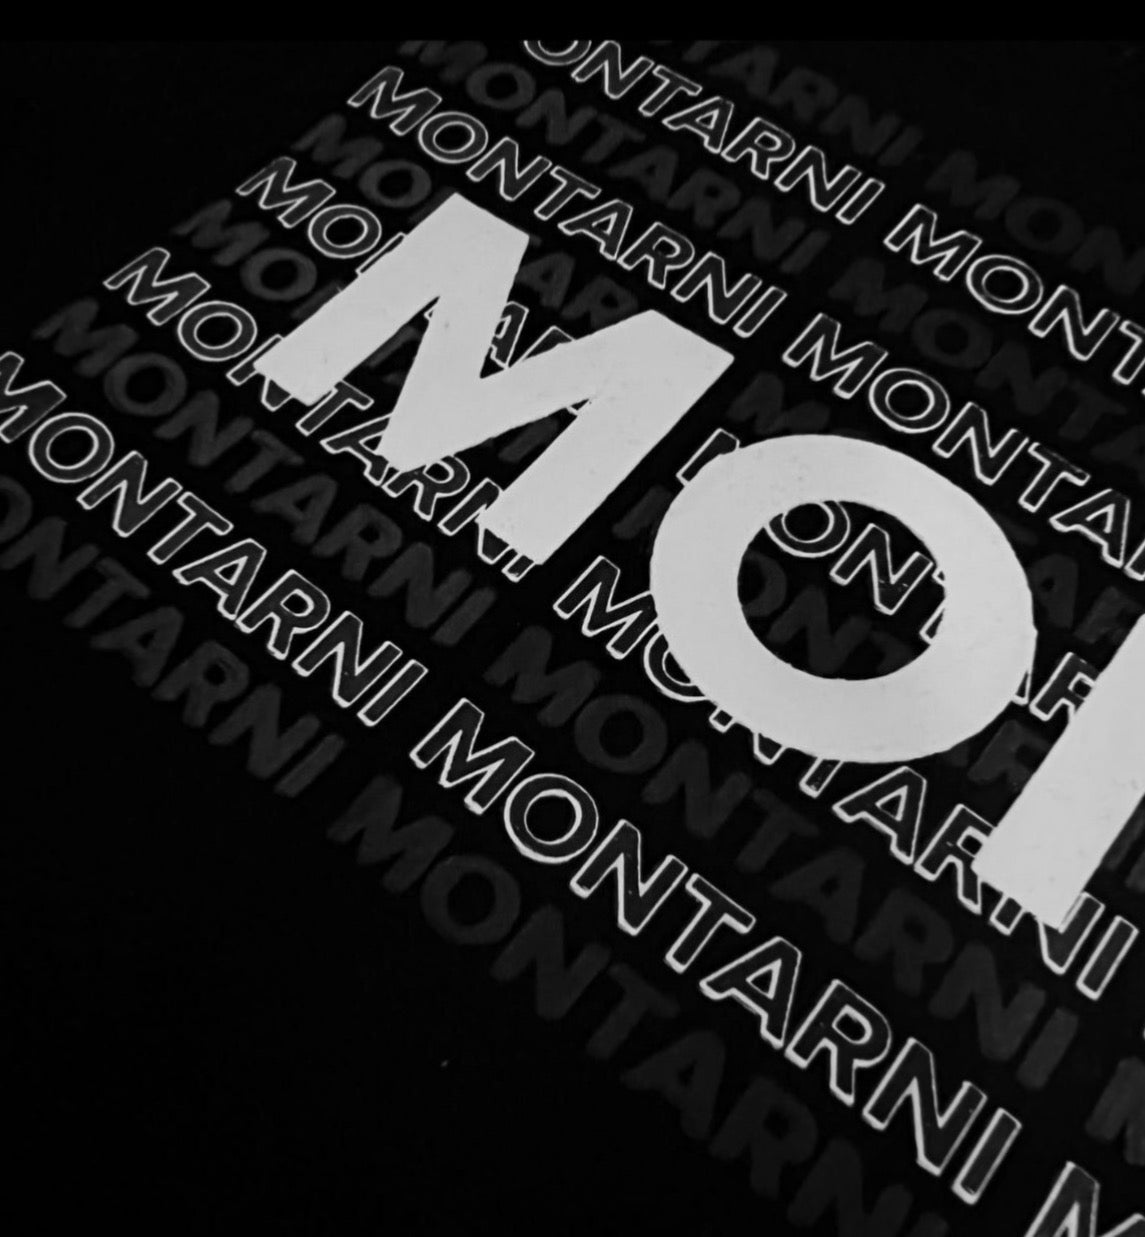 MONTARNI - Monogram Logo T-Shirt